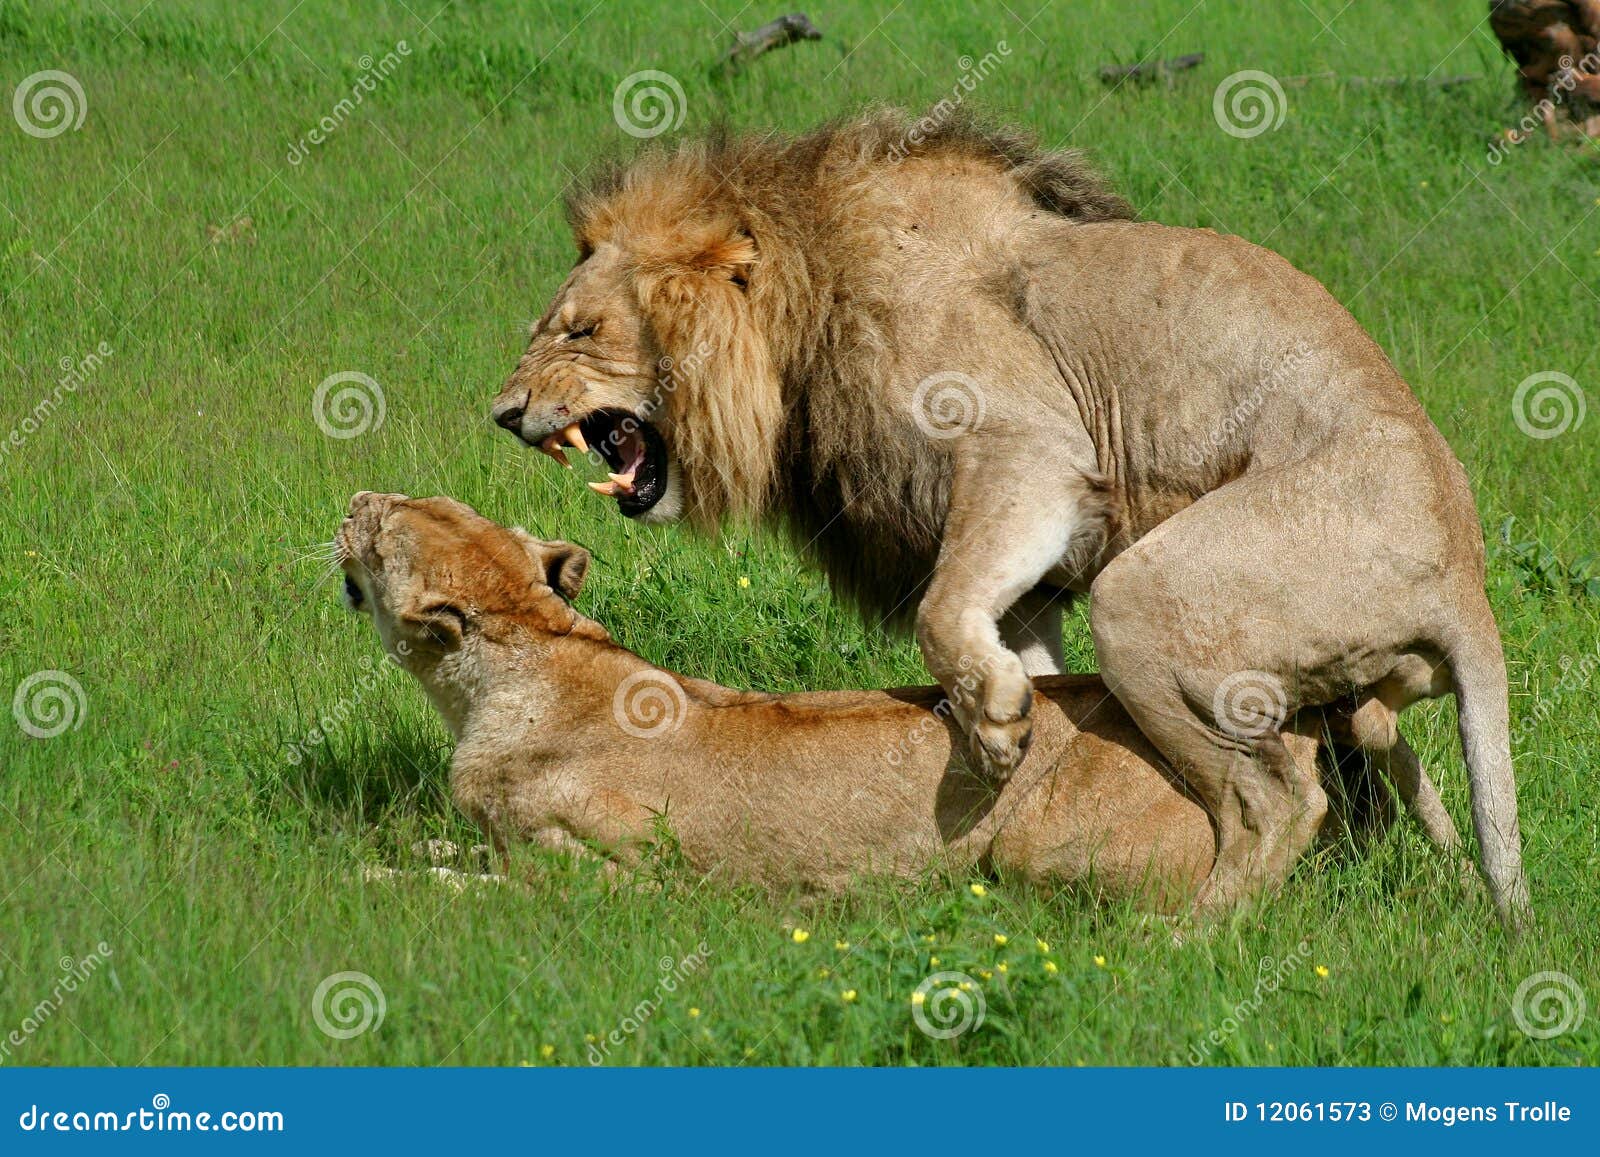 lions mating, okavango, botswana